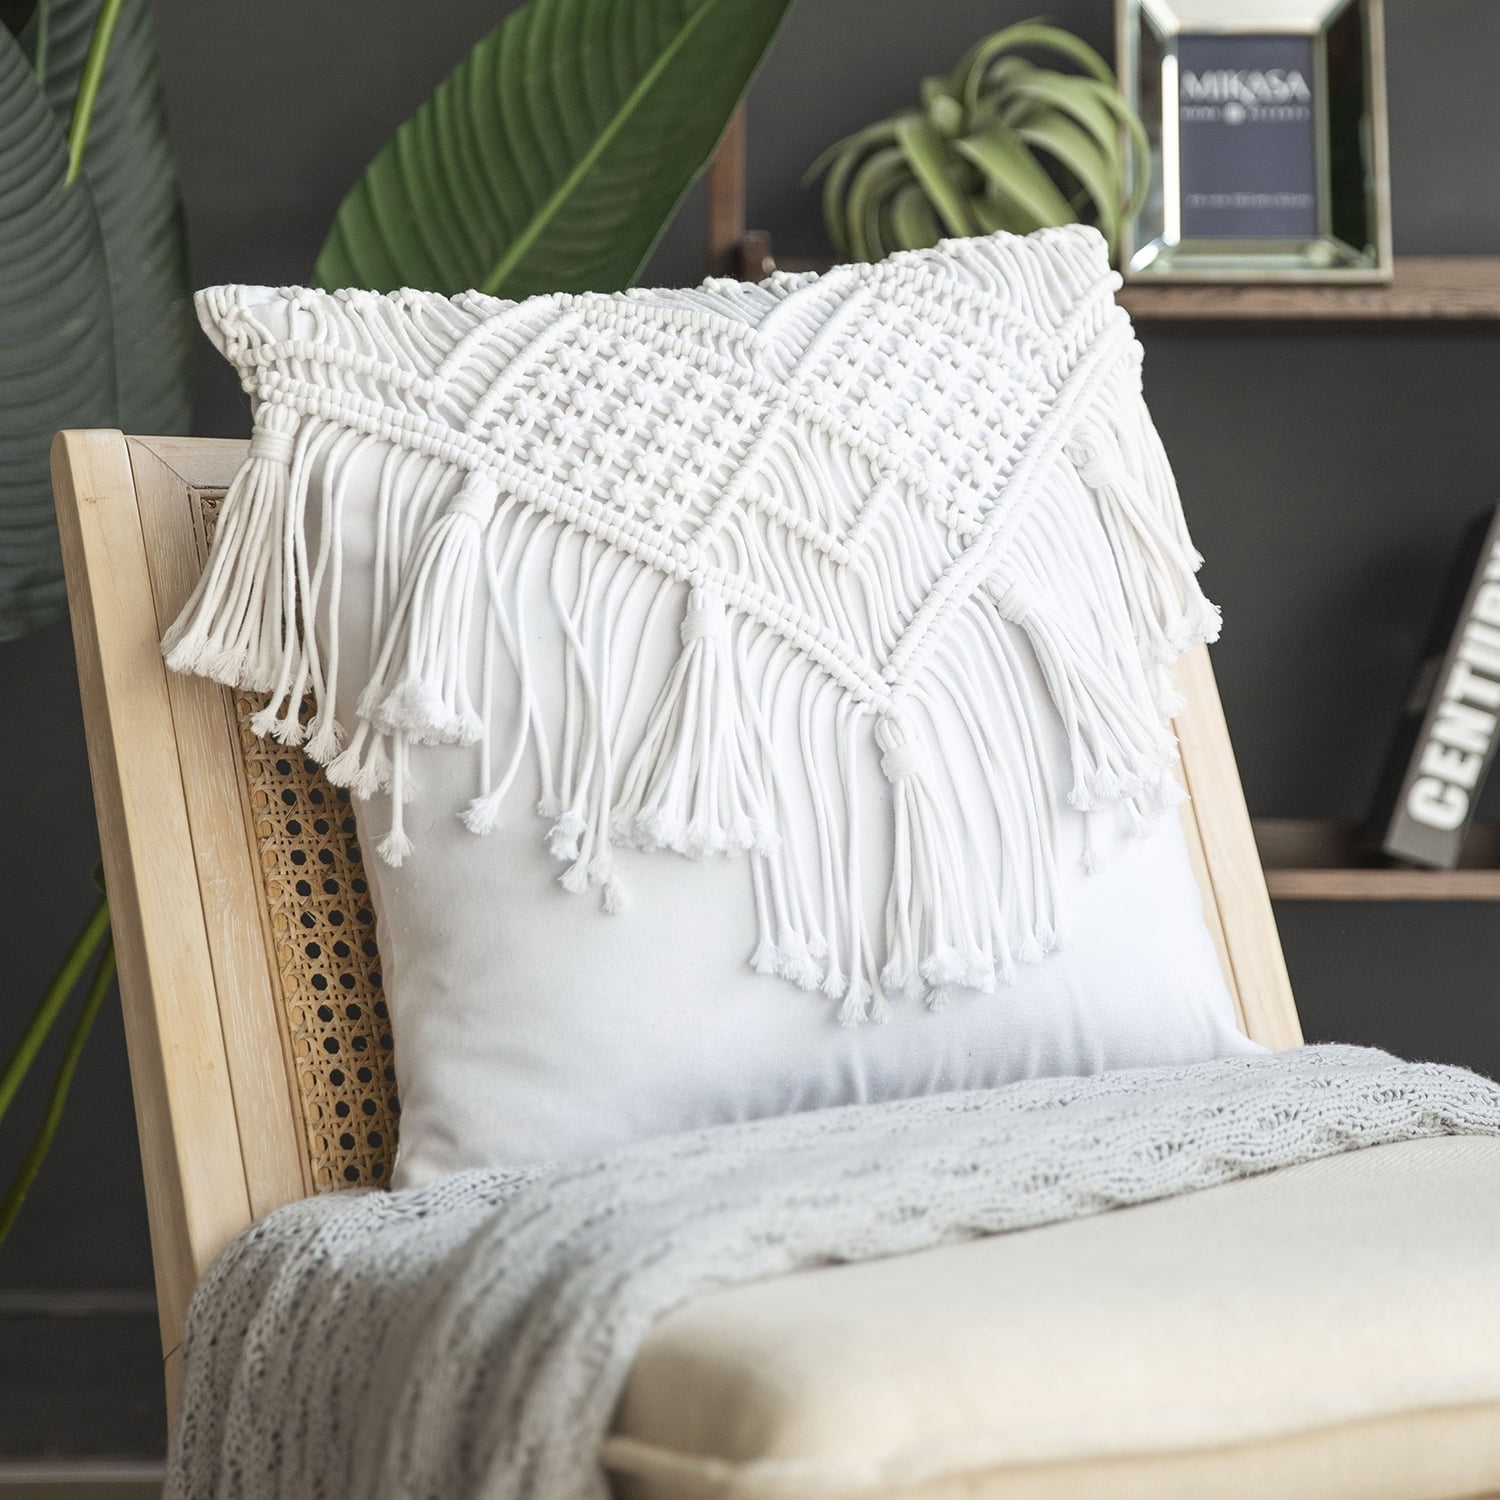 The Sak Home 18 x 18 Pillow Cover, Crochet Floormats & Pillows